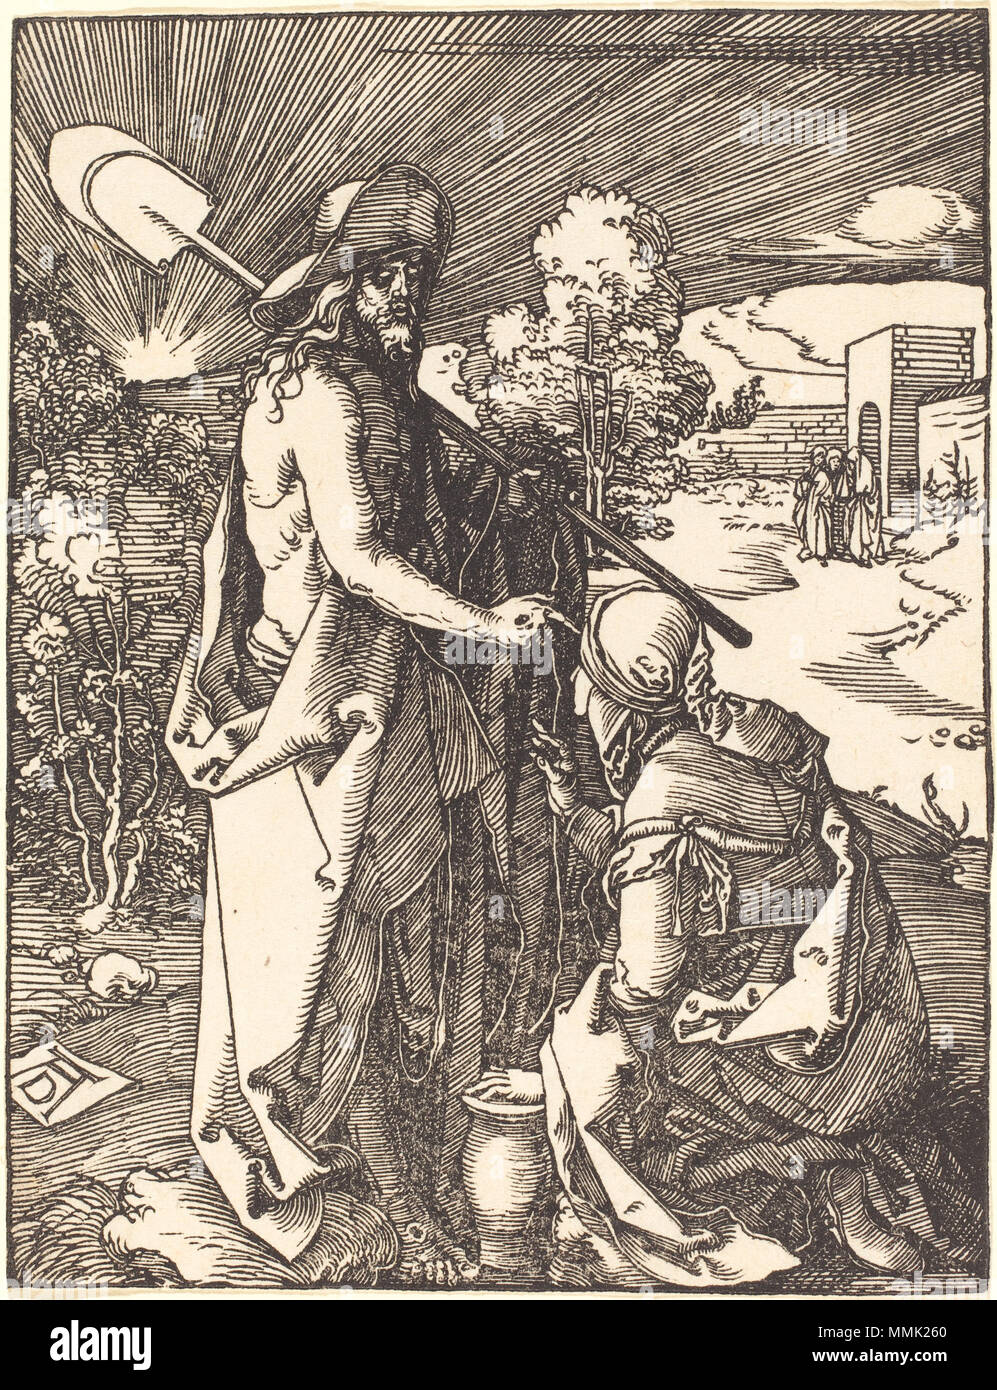 R-20101022-0035.jpg Albrecht Dürer (German, 1471 - 1528 ), Noli Me Tangere, probably c. 1509/1510, woodcut, Rosenwald Collection Albrecht Dürer - Noli Me Tangere (NGA 1943.3.3663) Stock Photo